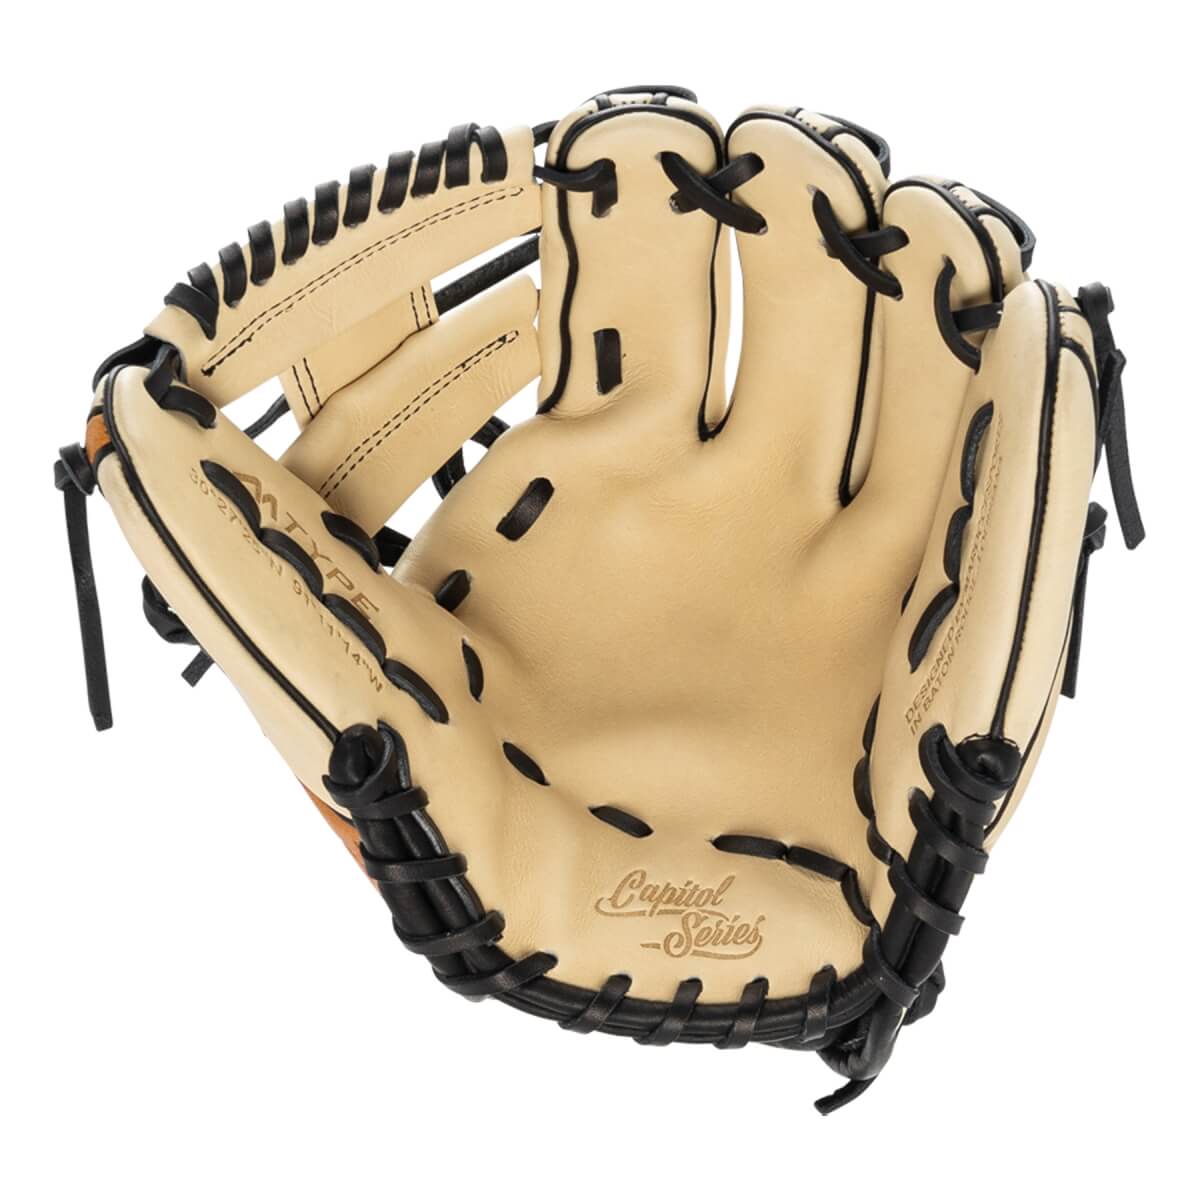 Marucci Capitol 11.25" Baseball Glove - MFG2CP42A2-CM/GT